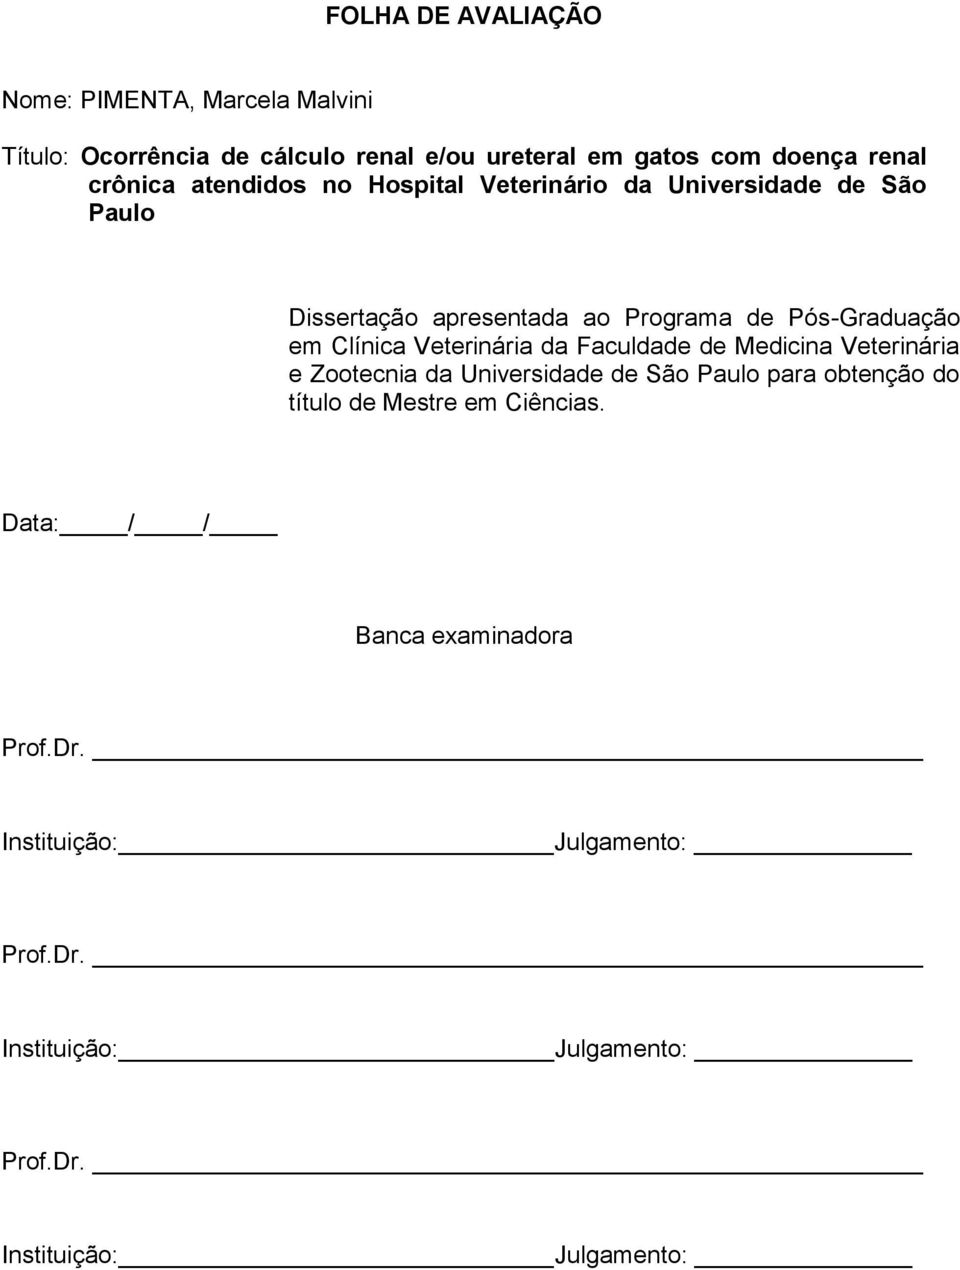 Clínica Veterinária da Faculdade de Medicina Veterinária e Zootecnia da Universidade de São Paulo para obtenção do título de Mestre